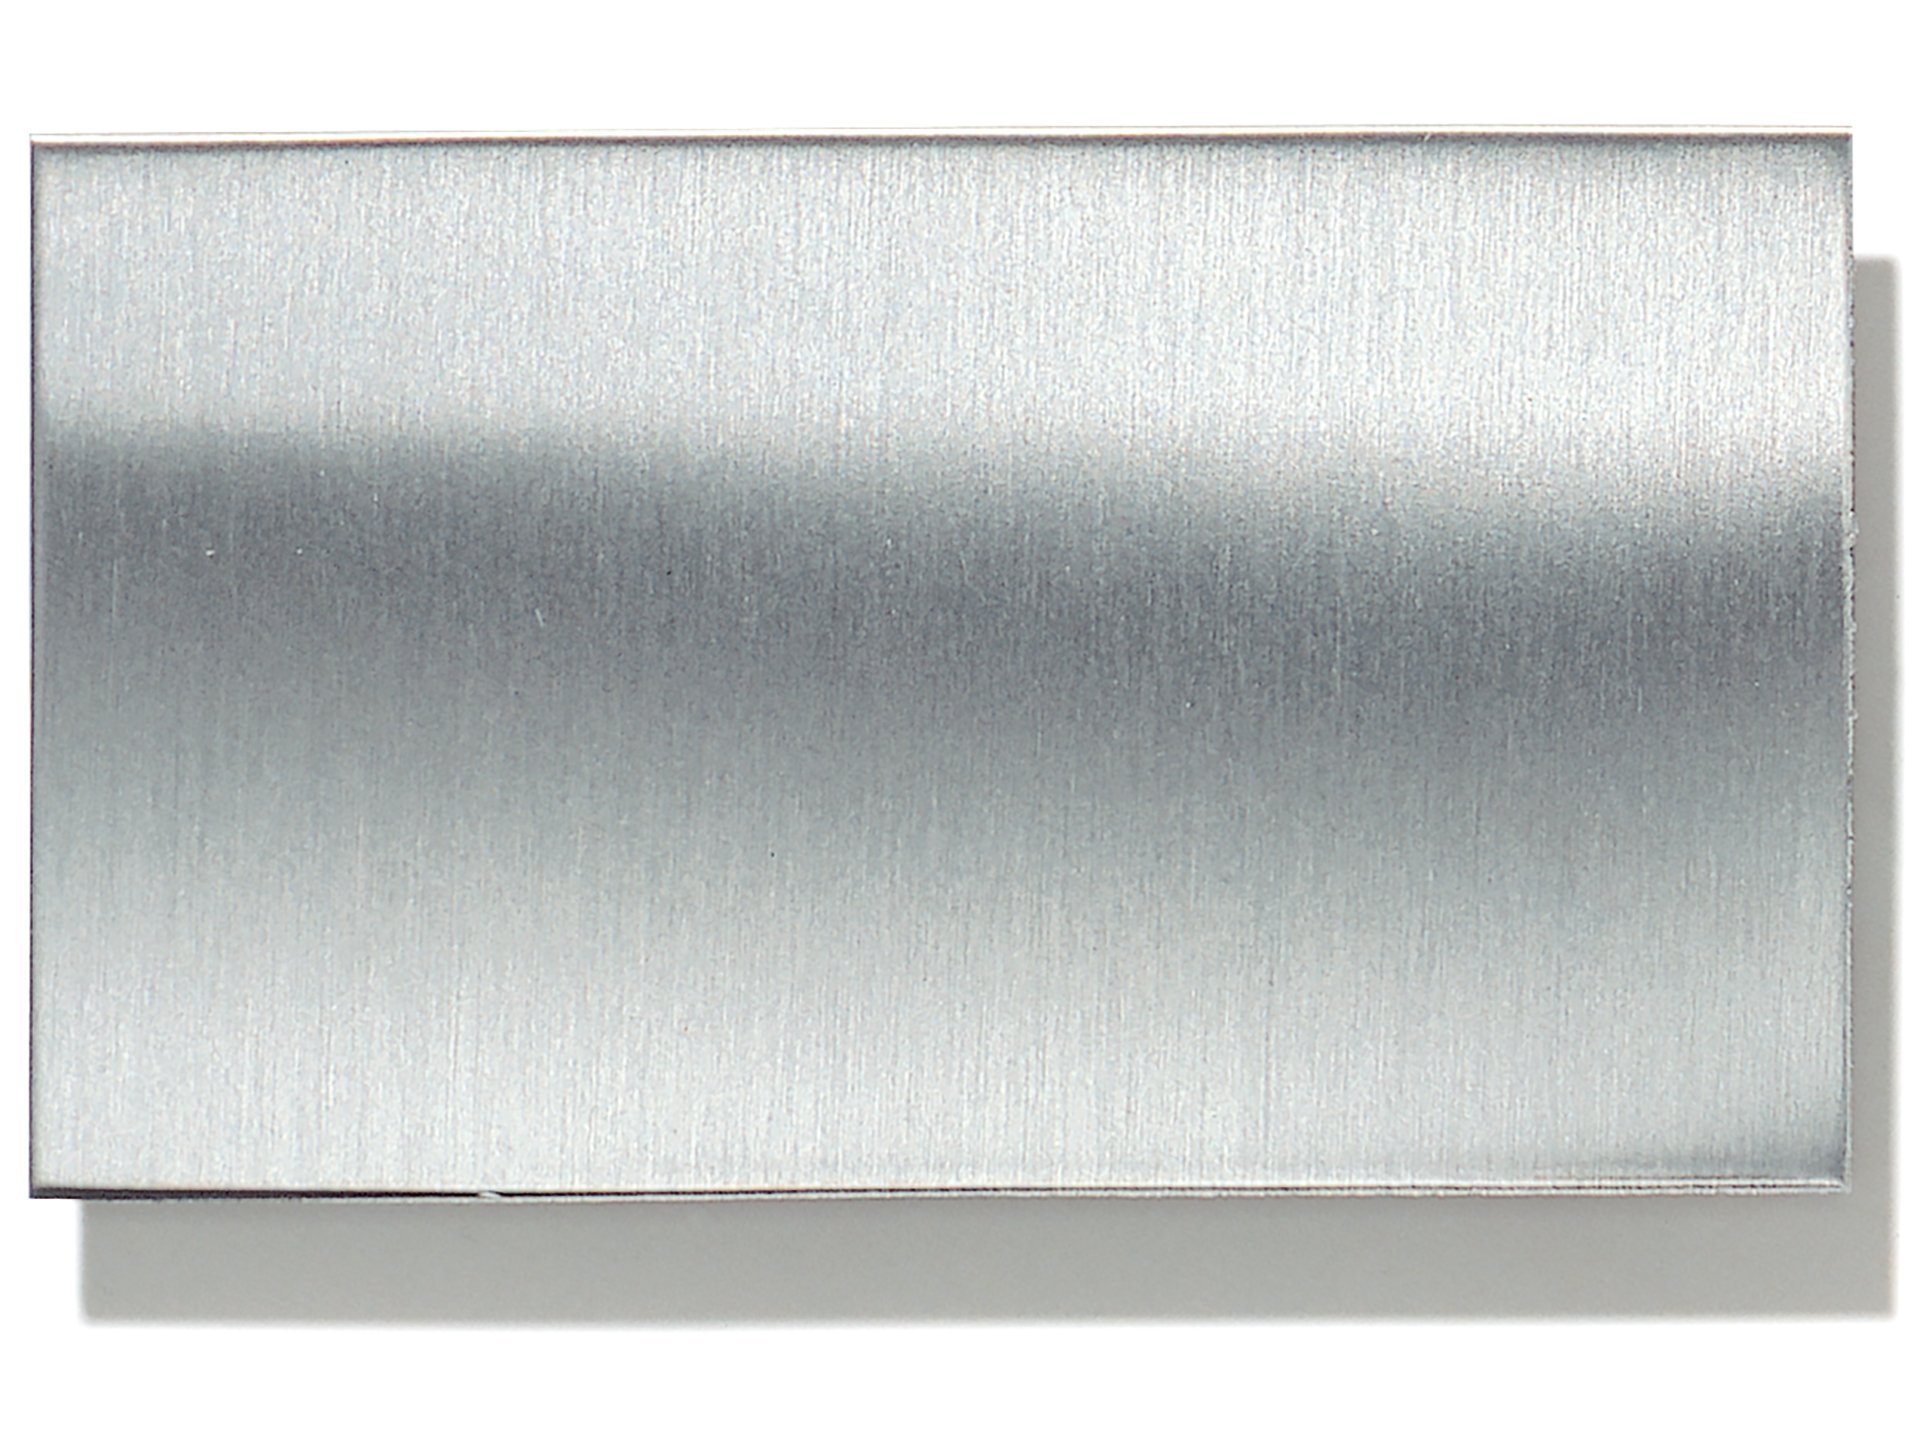 Corte de chapa de acero inoxidable de 3mm hasta 1000x1000mm, 1,82 €